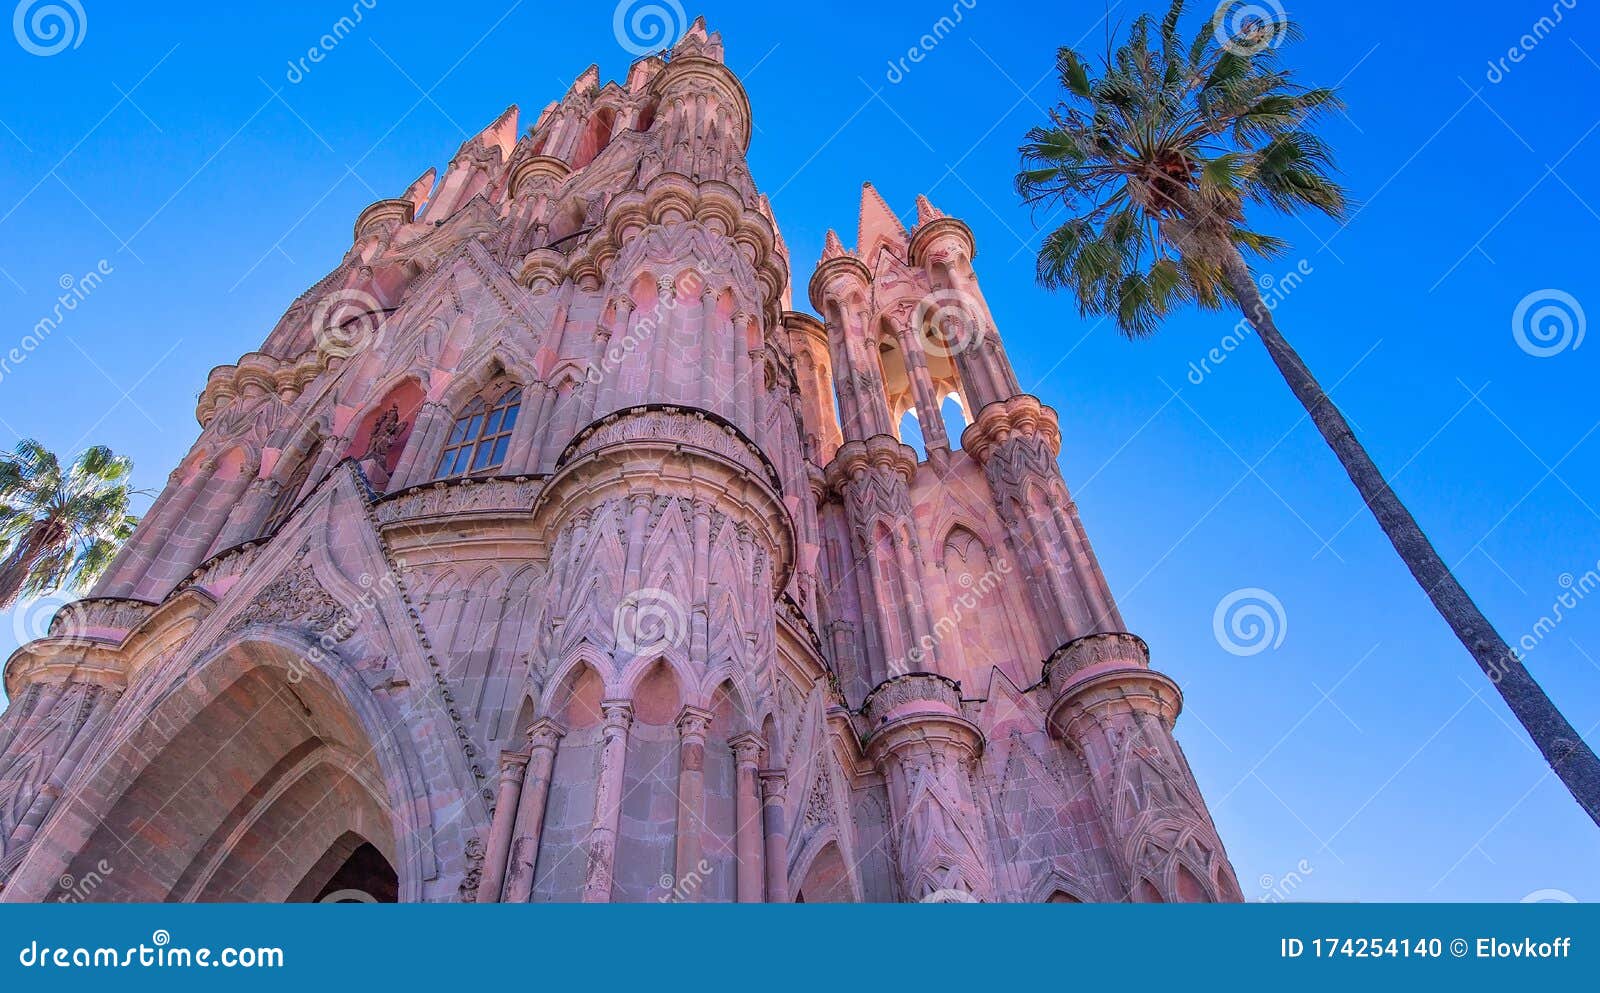 landmark parroquia de san miguel arcangel cathedral in historic city center of san miguel de allende, mexico